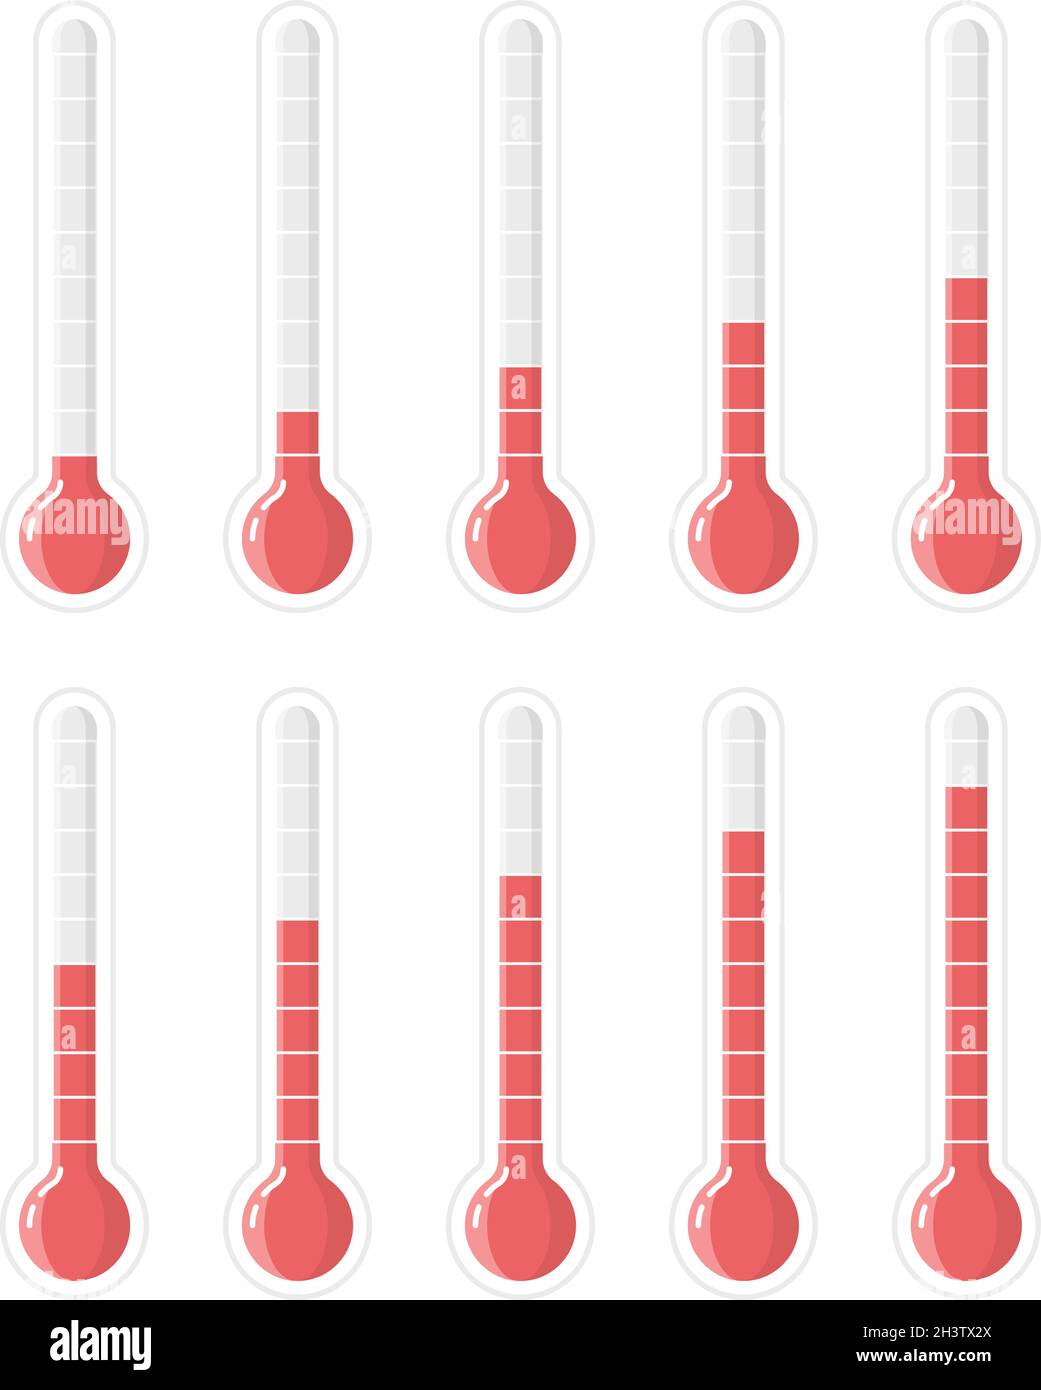 Scala del termometro. Maschere di grado Fahrenheit o celsius per la raccolta di segni vettoriali termometrici Illustrazione Vettoriale